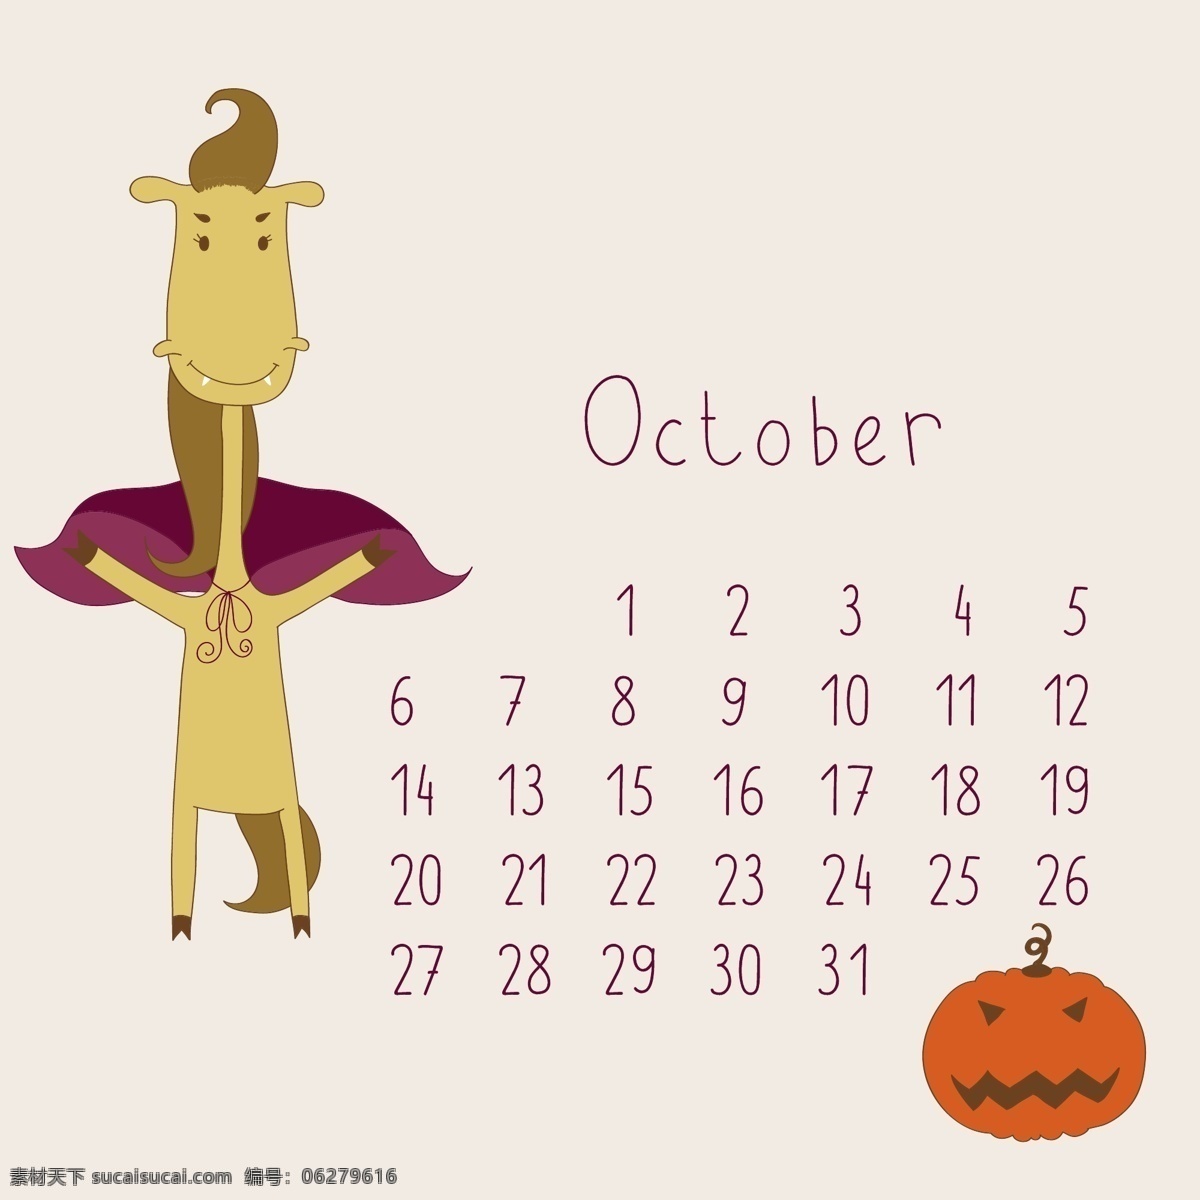 可爱 的卡 通 十月 月历 矢量 卡通 可爱的 可爱的卡通 日历 矢量节日 节日素材 其他节日